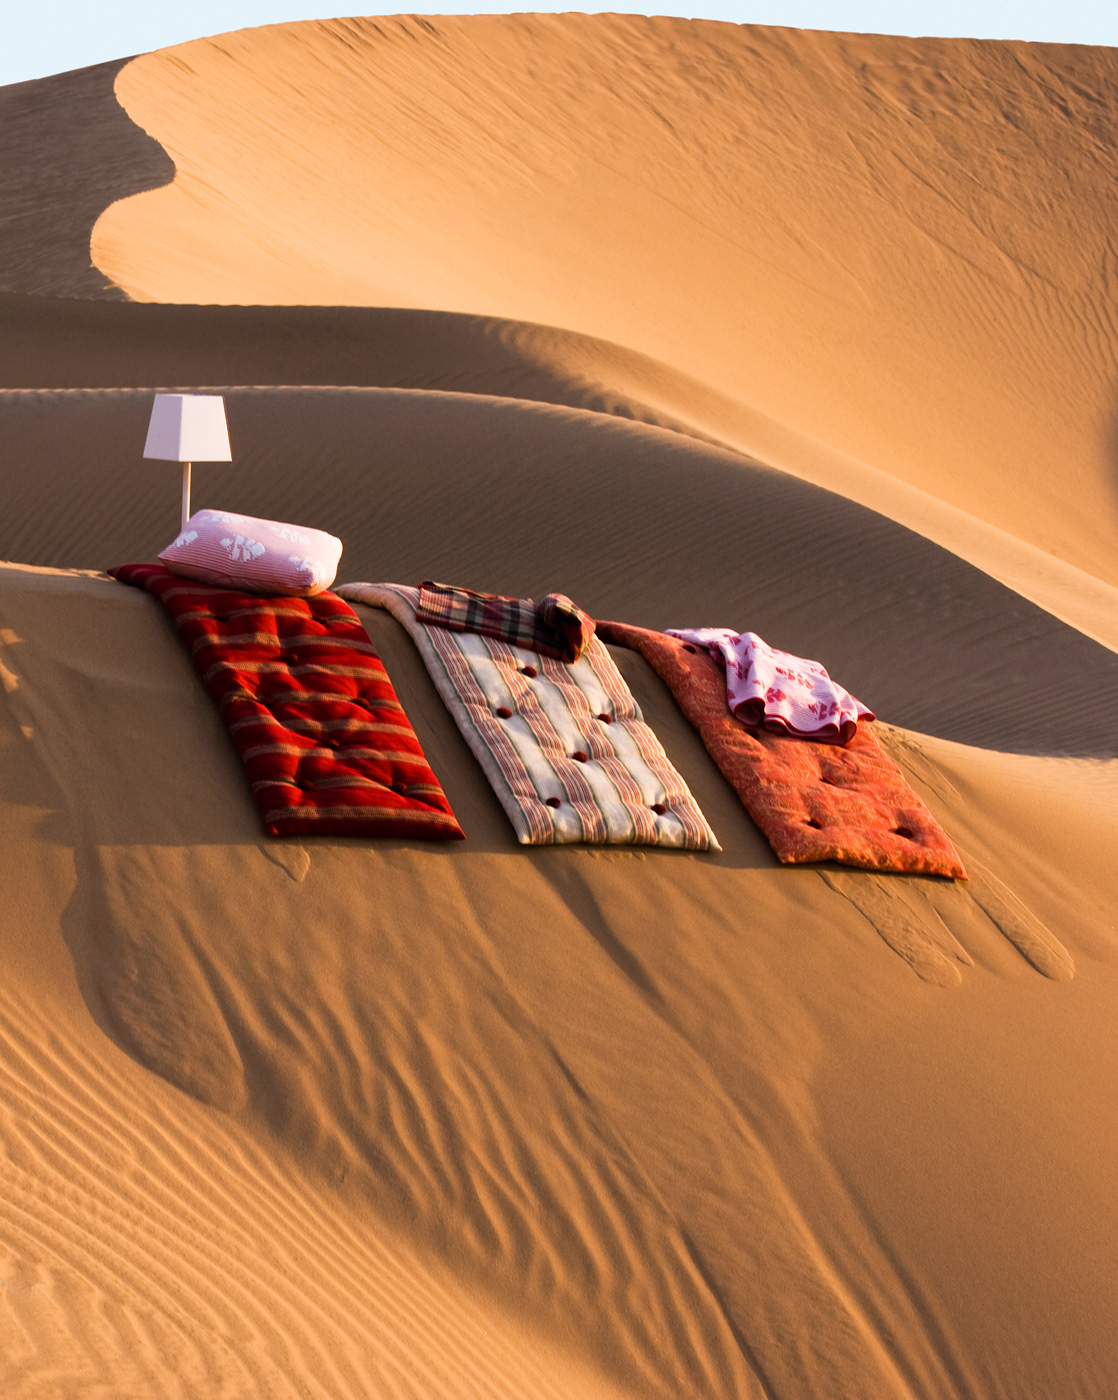 Textiles fabrics Deserts interiors bags beds